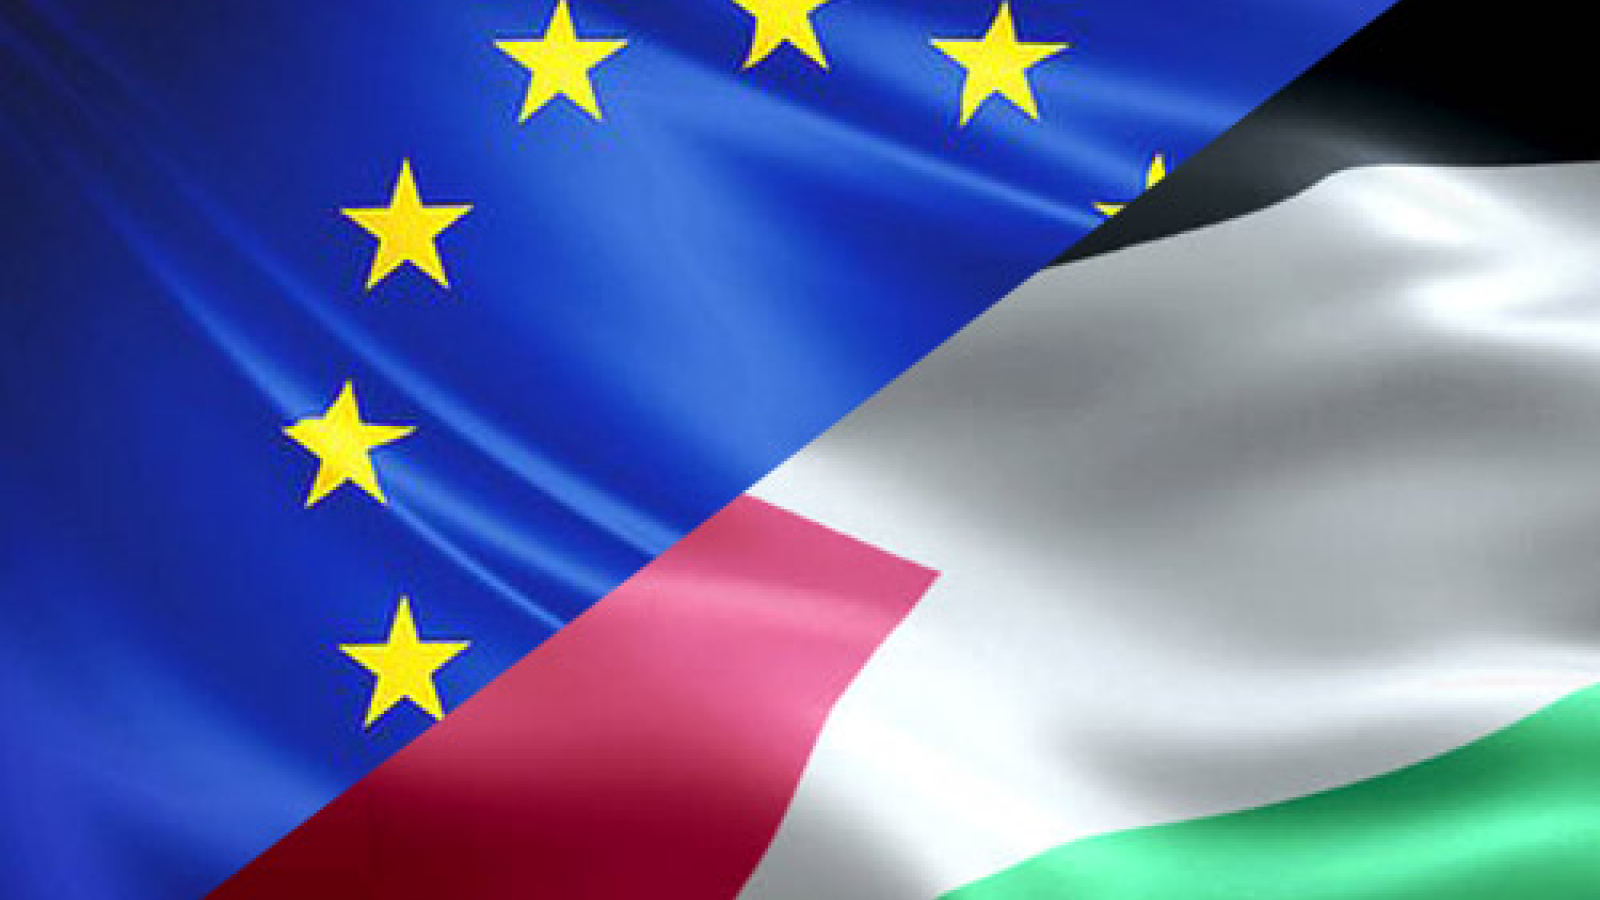 الاتحاد الأوروبي: لا نقدم مساعدات للأمن الفلسطيني